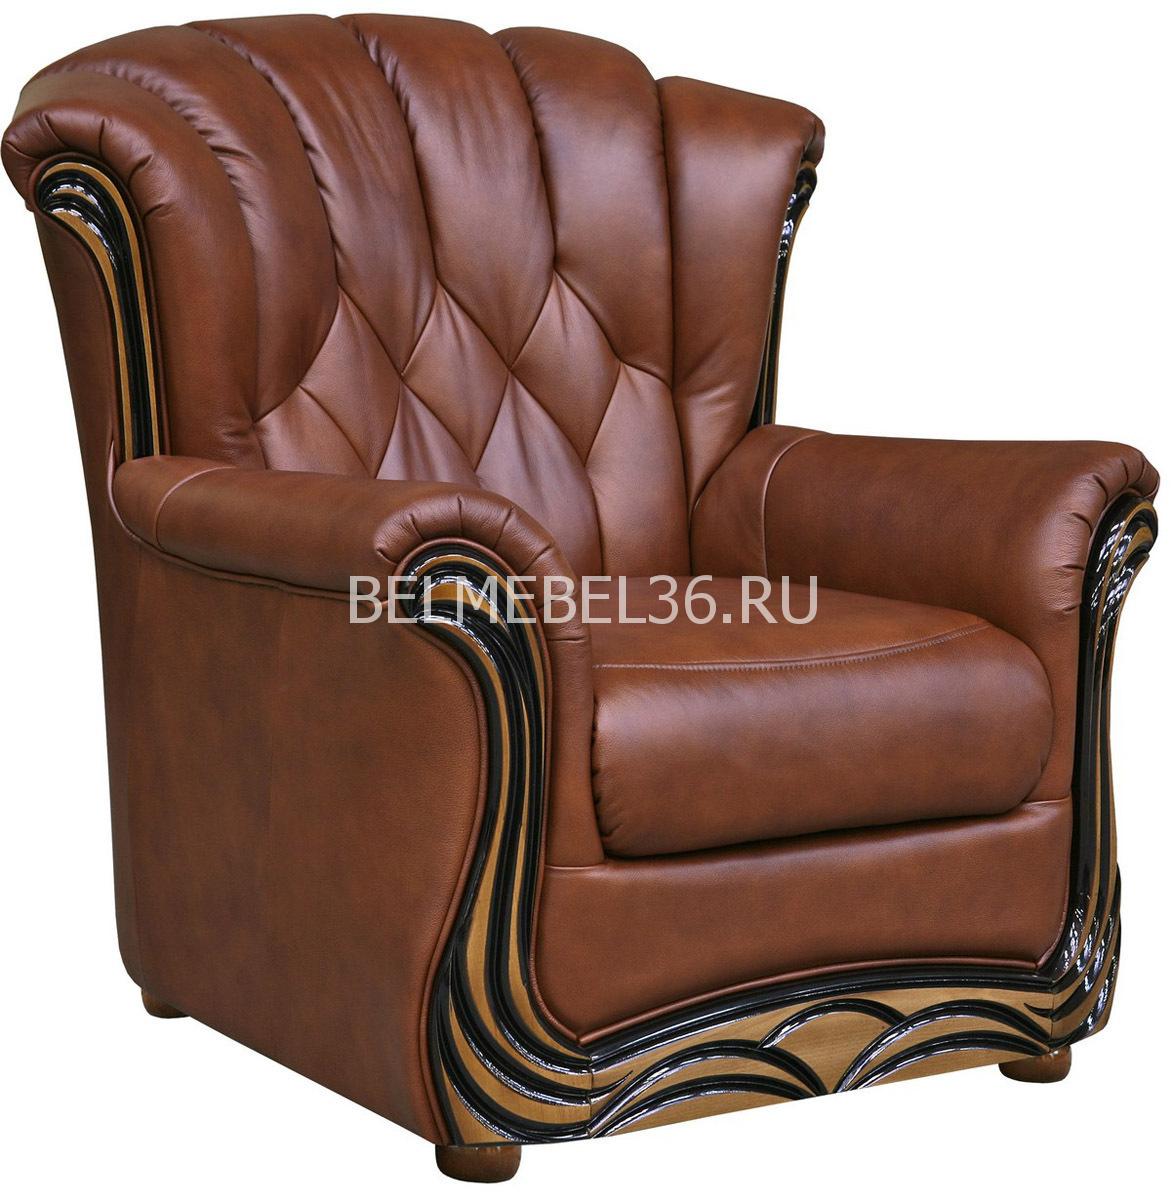 Кресло Европа (12) П-Д061 | Белорусская мебель в Воронеже